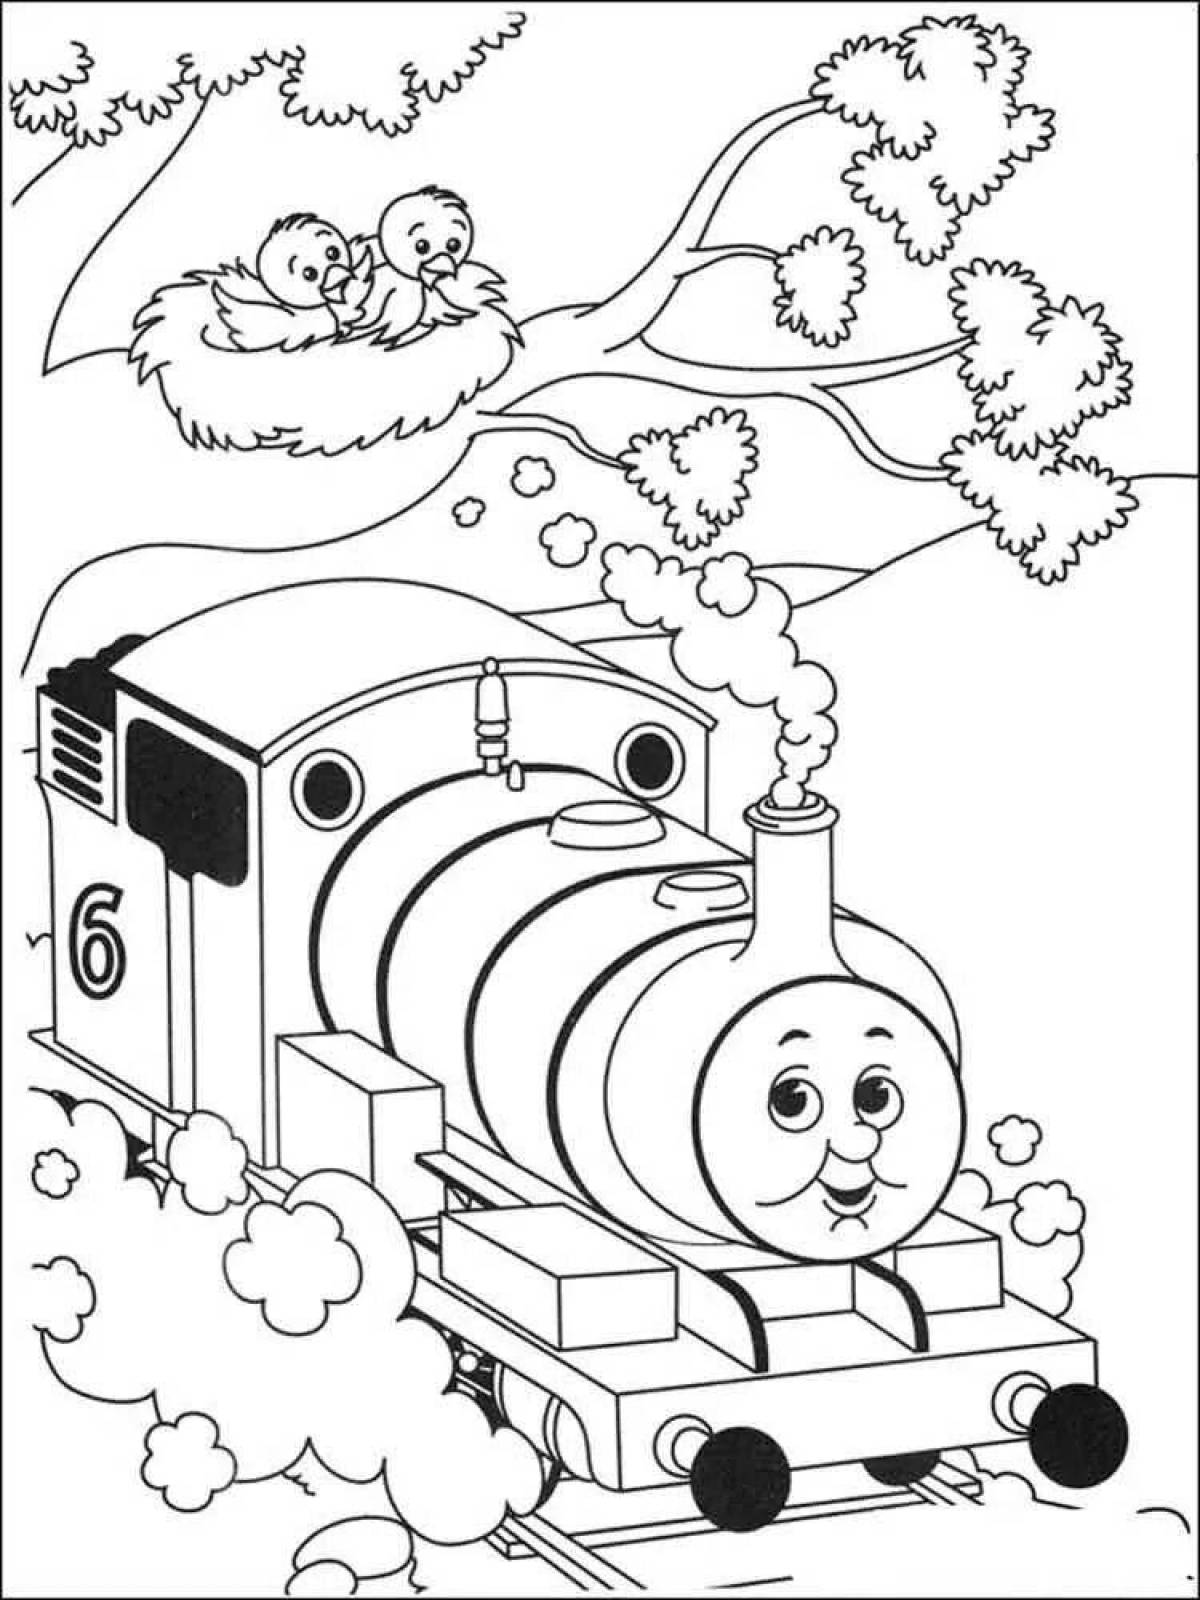 Смелый томас локомотив раскраска